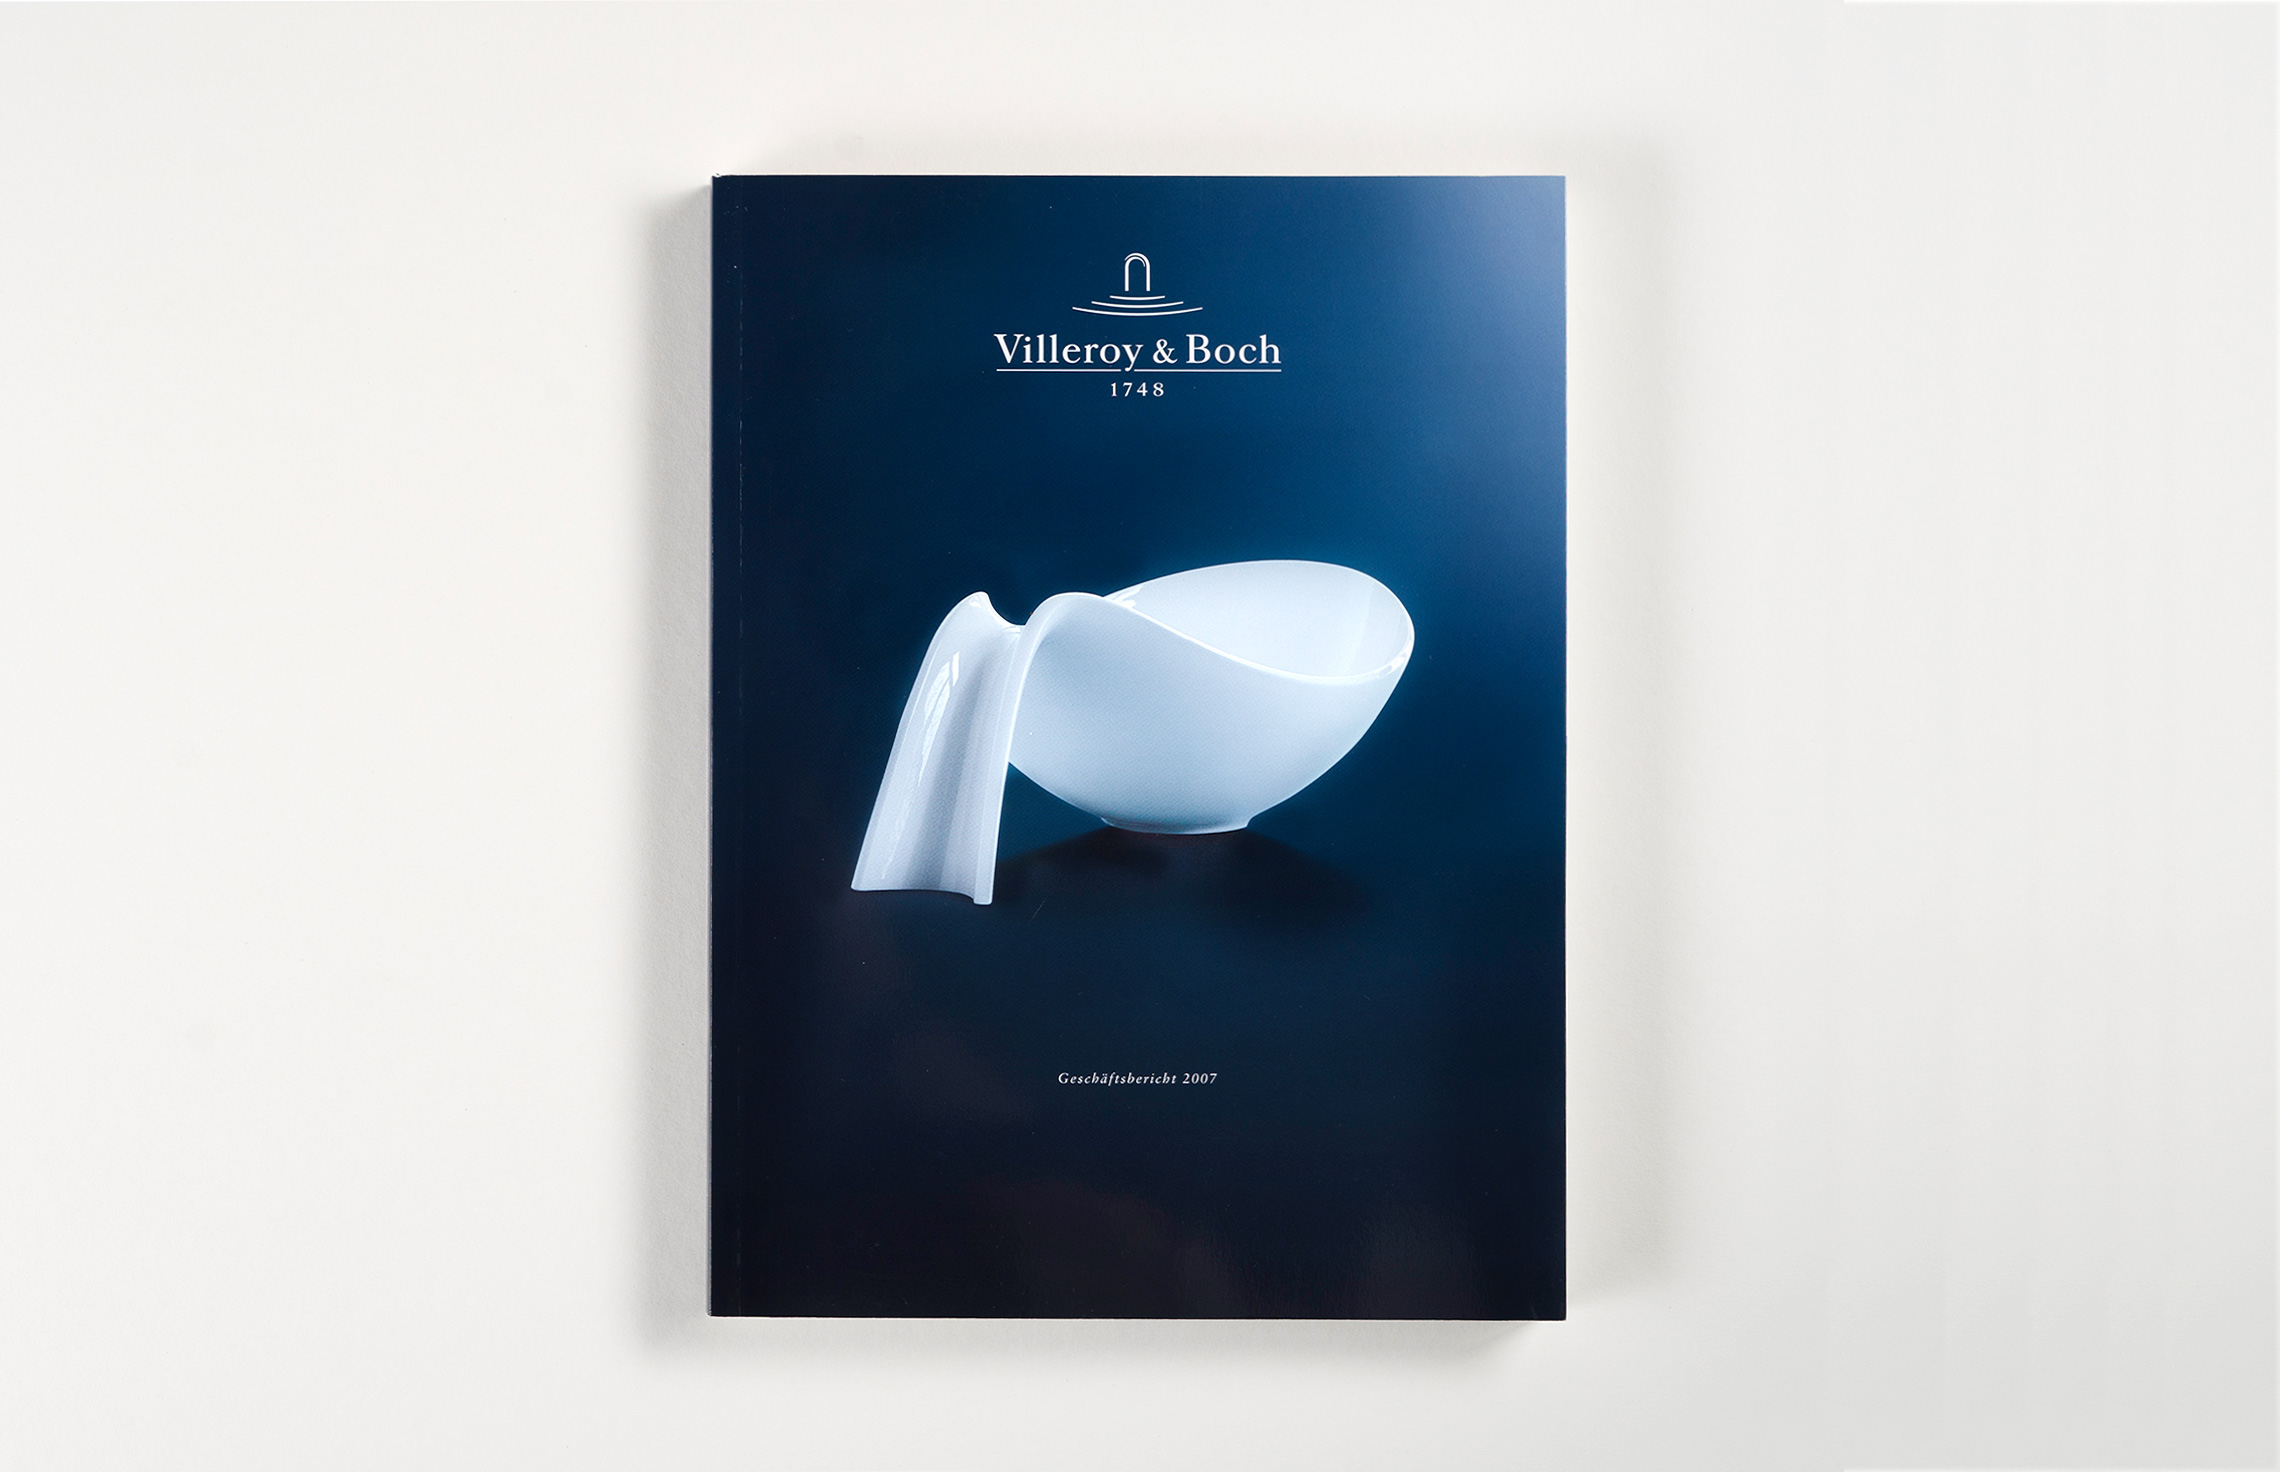 Annual Report Design, Cover vom Geschäftsbericht 2007 von Villeroy & Boch; Print Design, Typografie